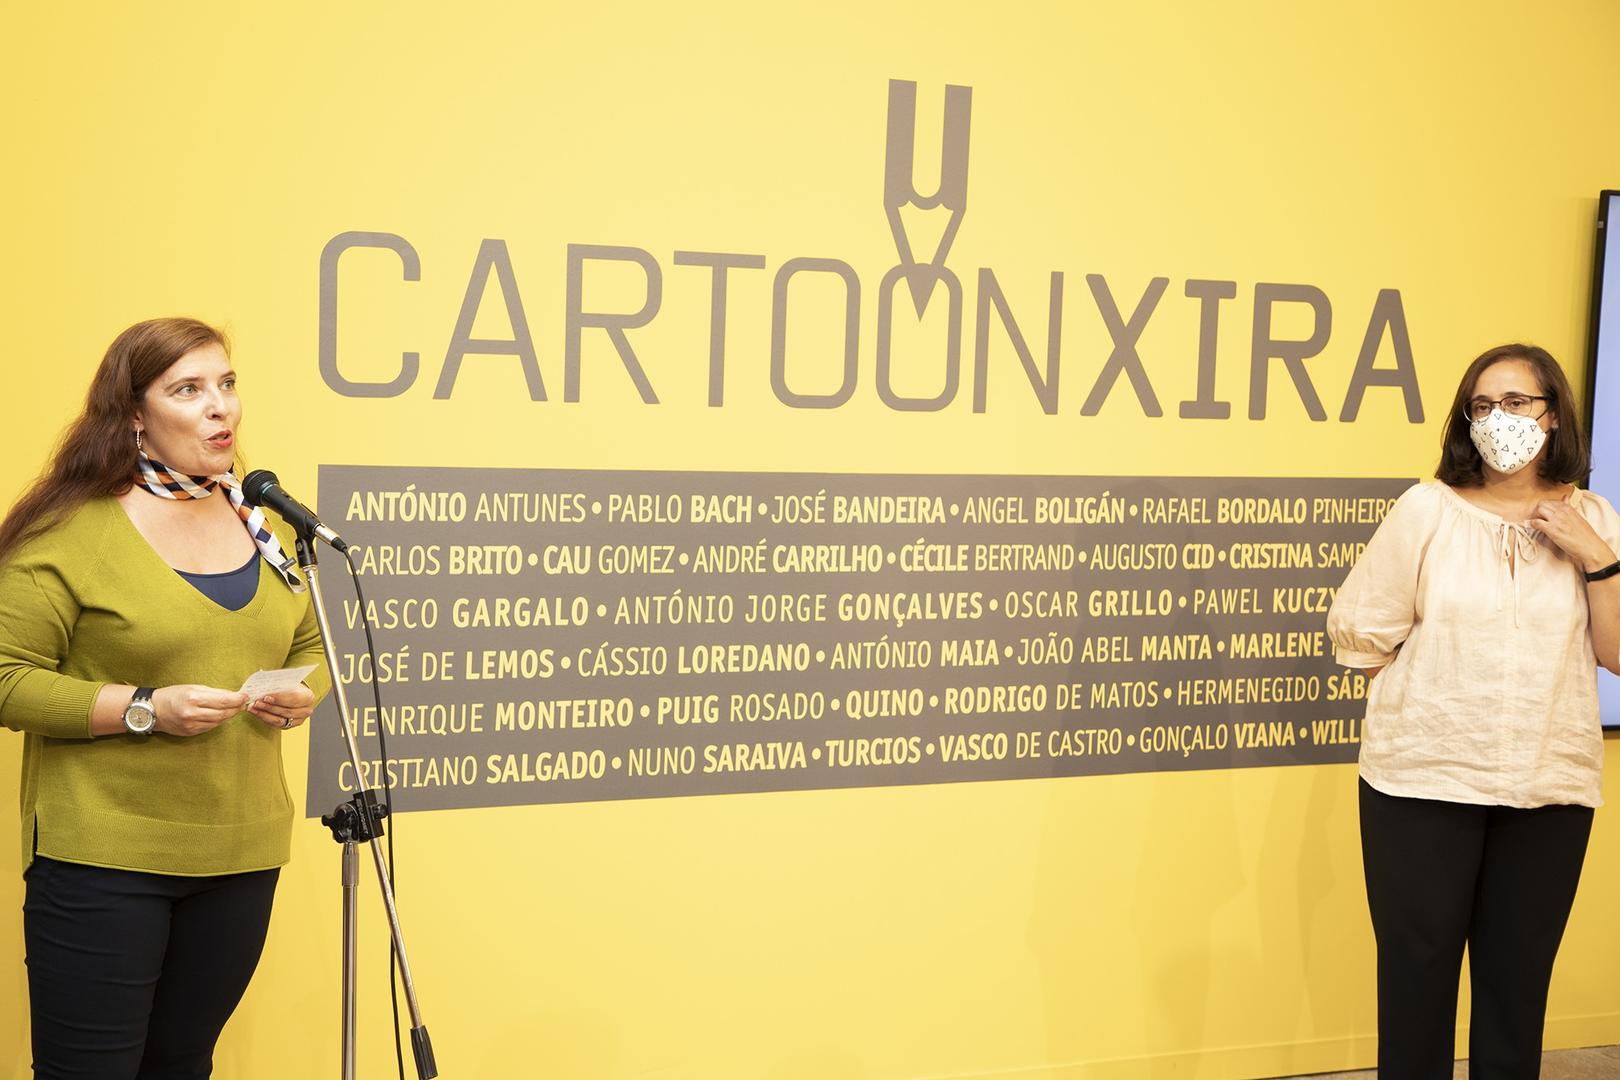 Inauguração da Cartoon Xira